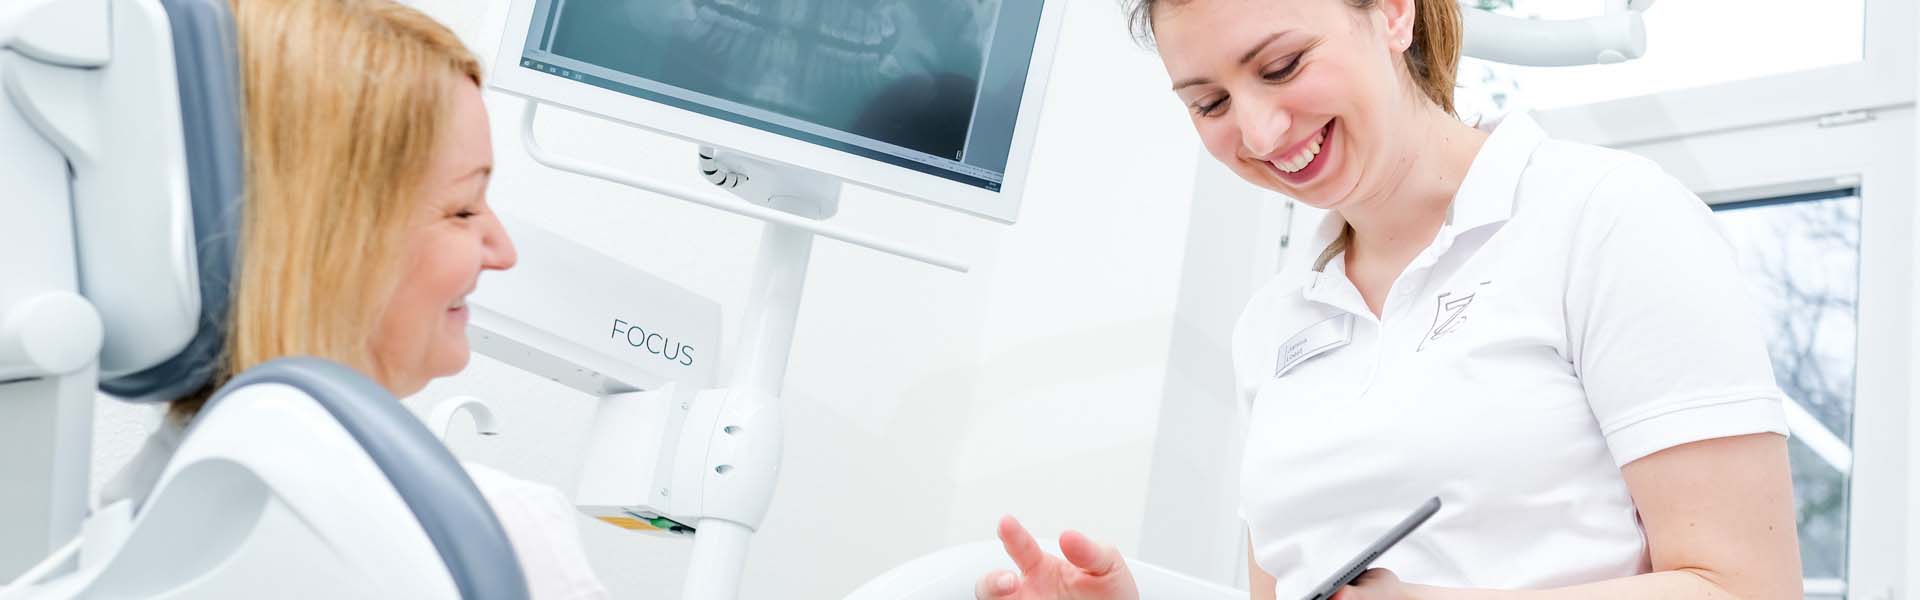 Zahnärztin Janina Kues veranschaulicht einer Patientin etwas via iPad